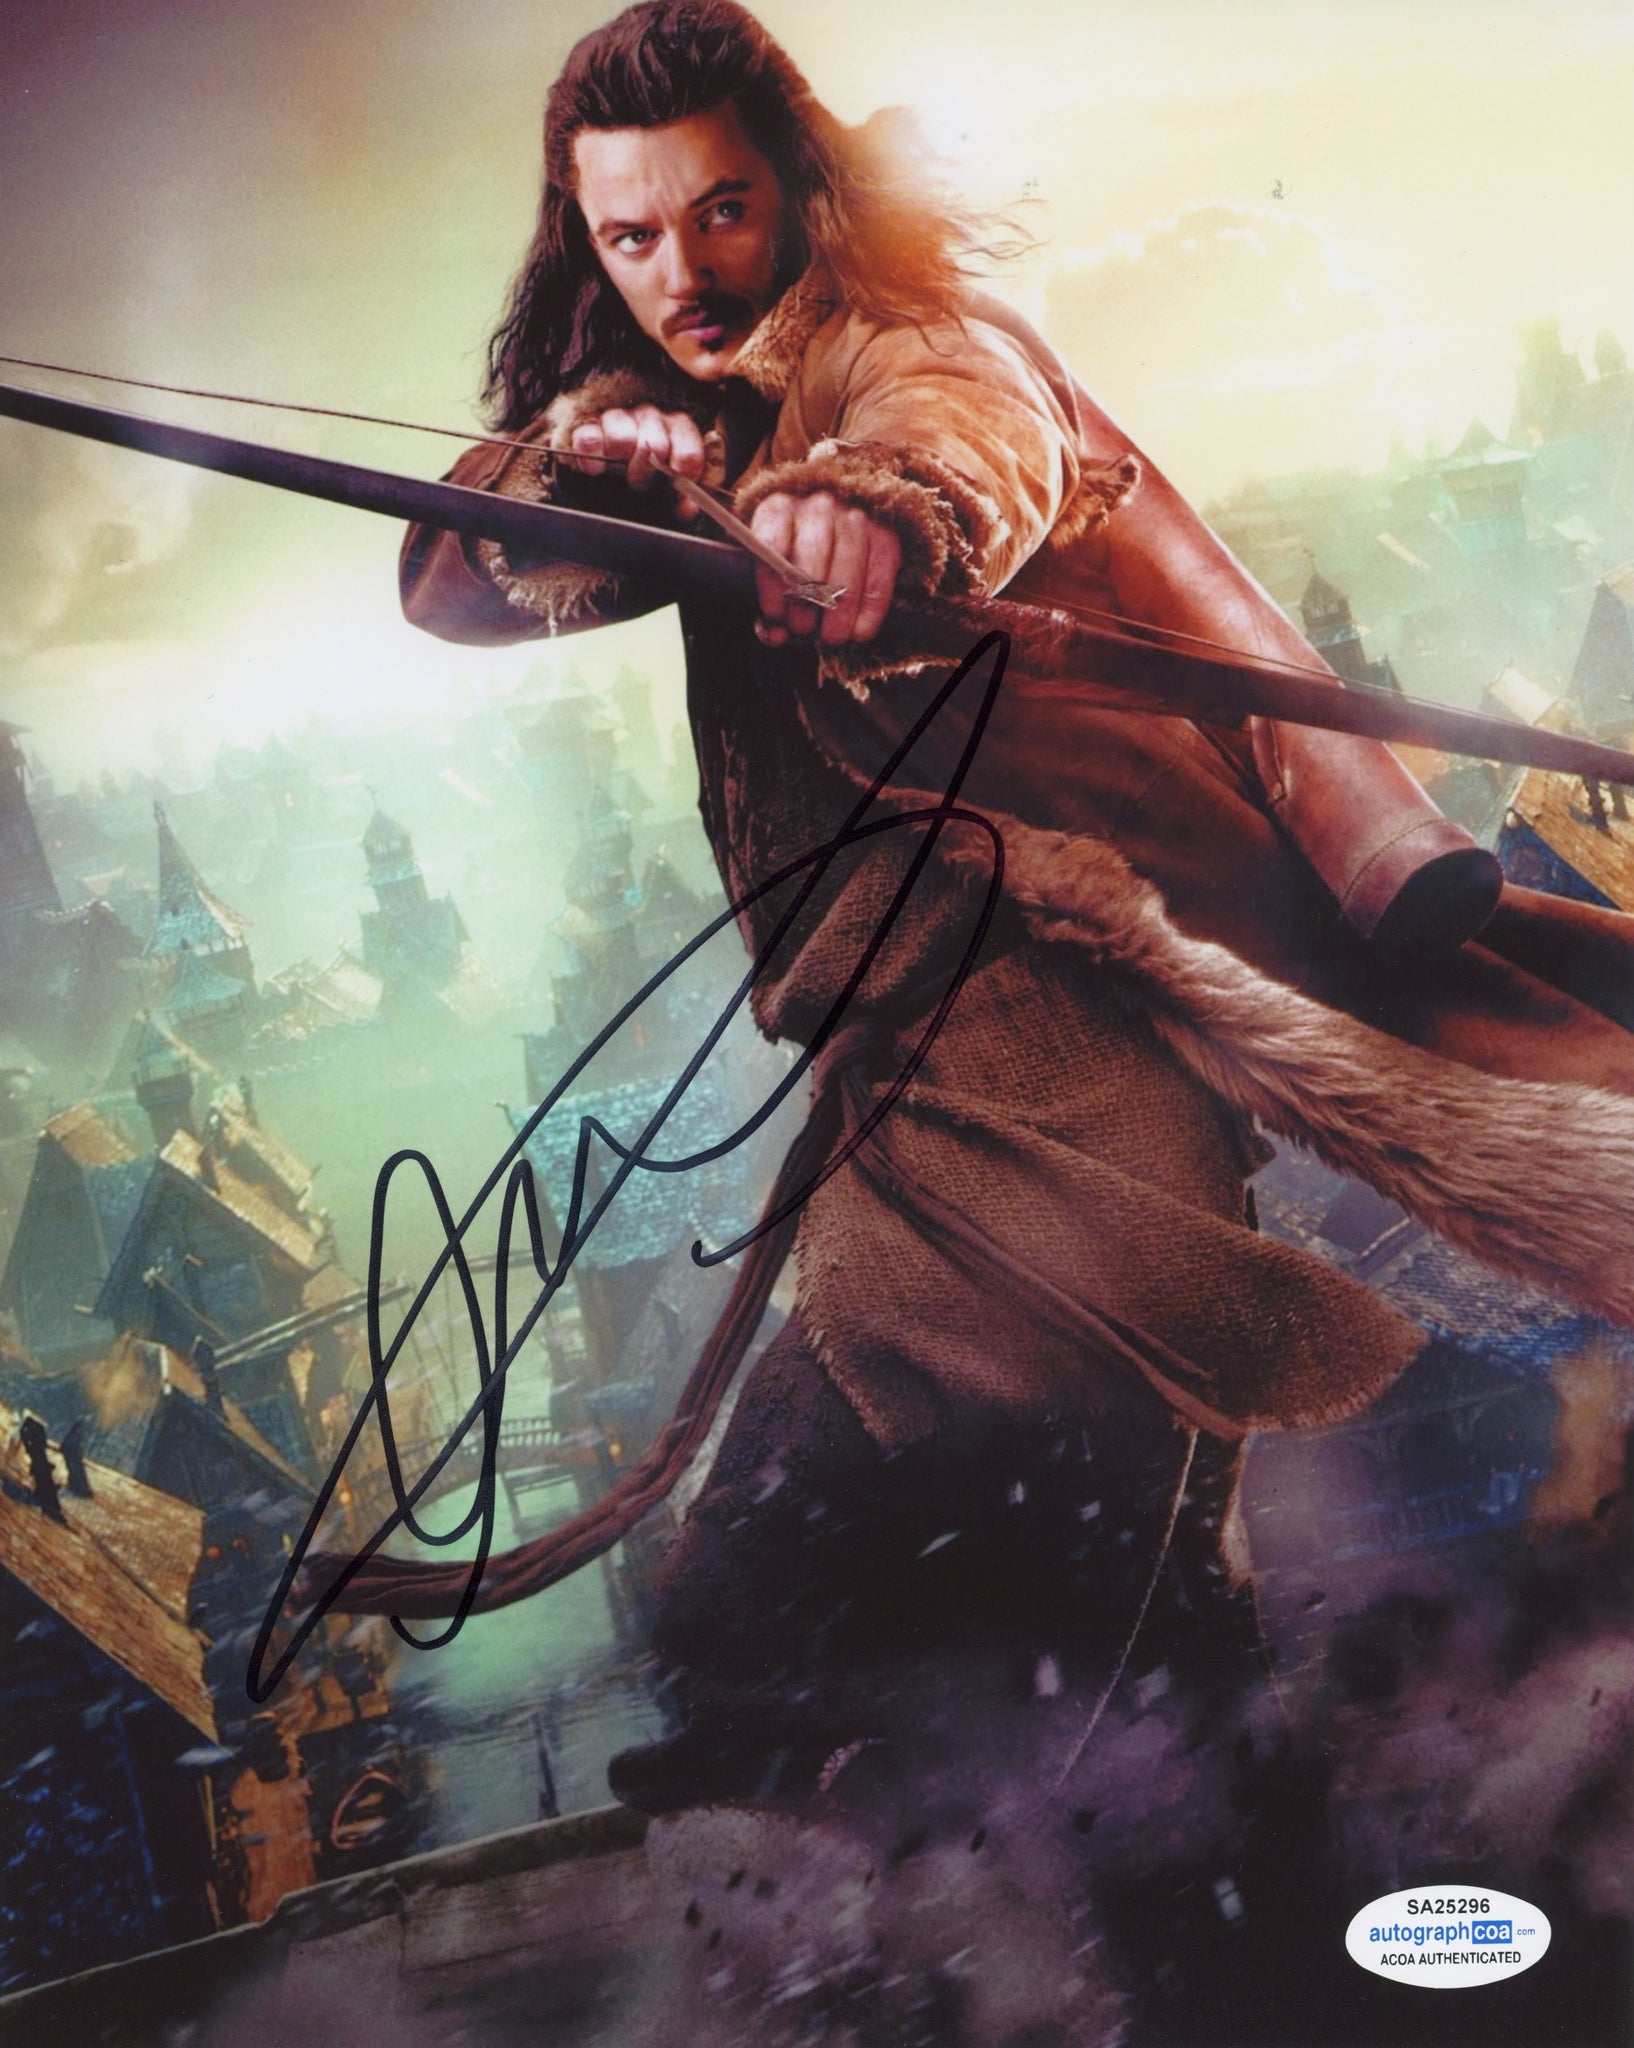 Luke Evans The Hobbit Signed Autograph 8x10 Photo ACOA - Outlaw Hobbies Authentic Autographs